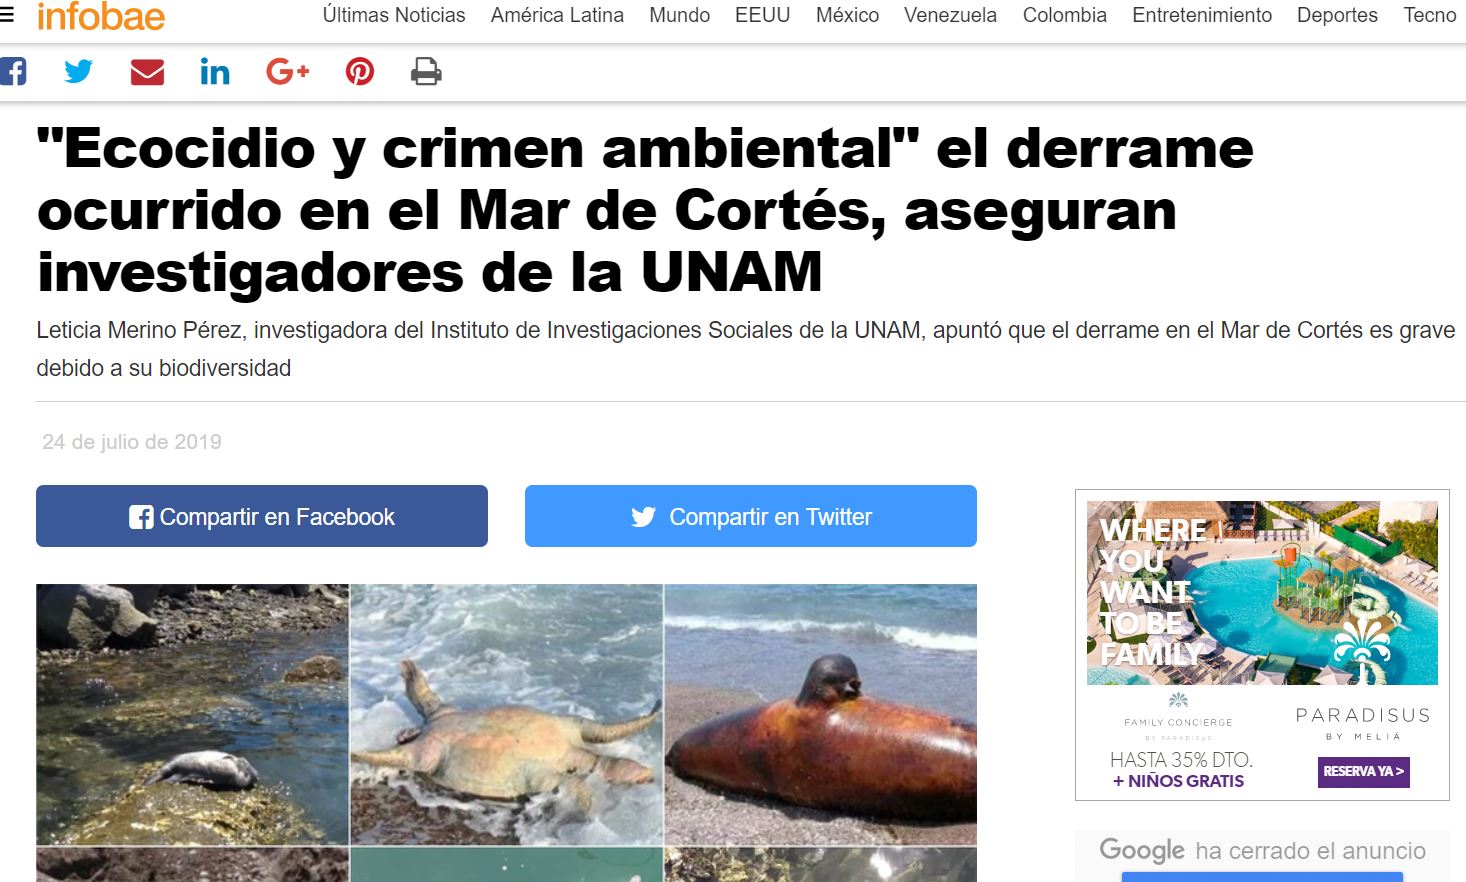 “Ecocidio y crimen ambiental” el derrame ocurrido en el Mar de Cortés, aseguran investigadores de la UNAM